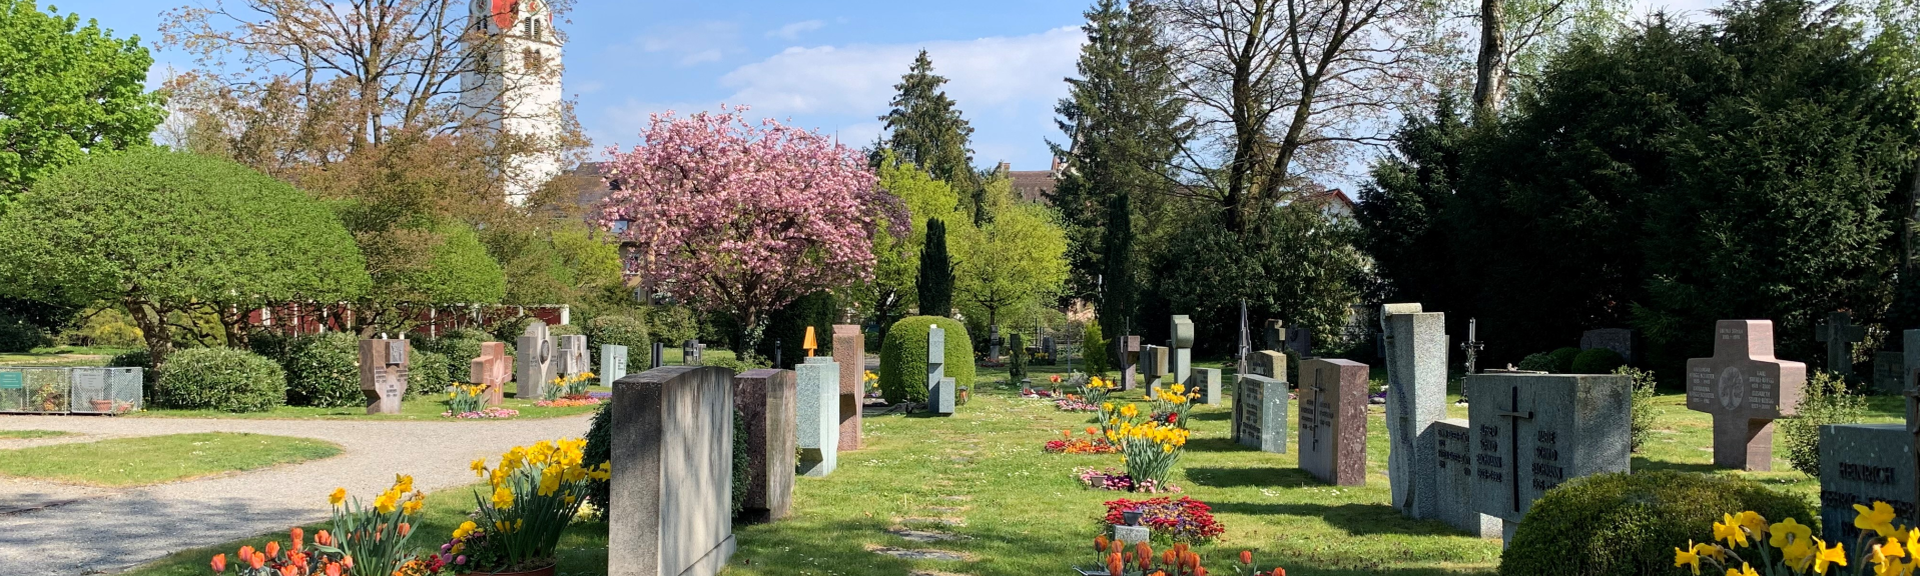 Friedhof Bremgarten